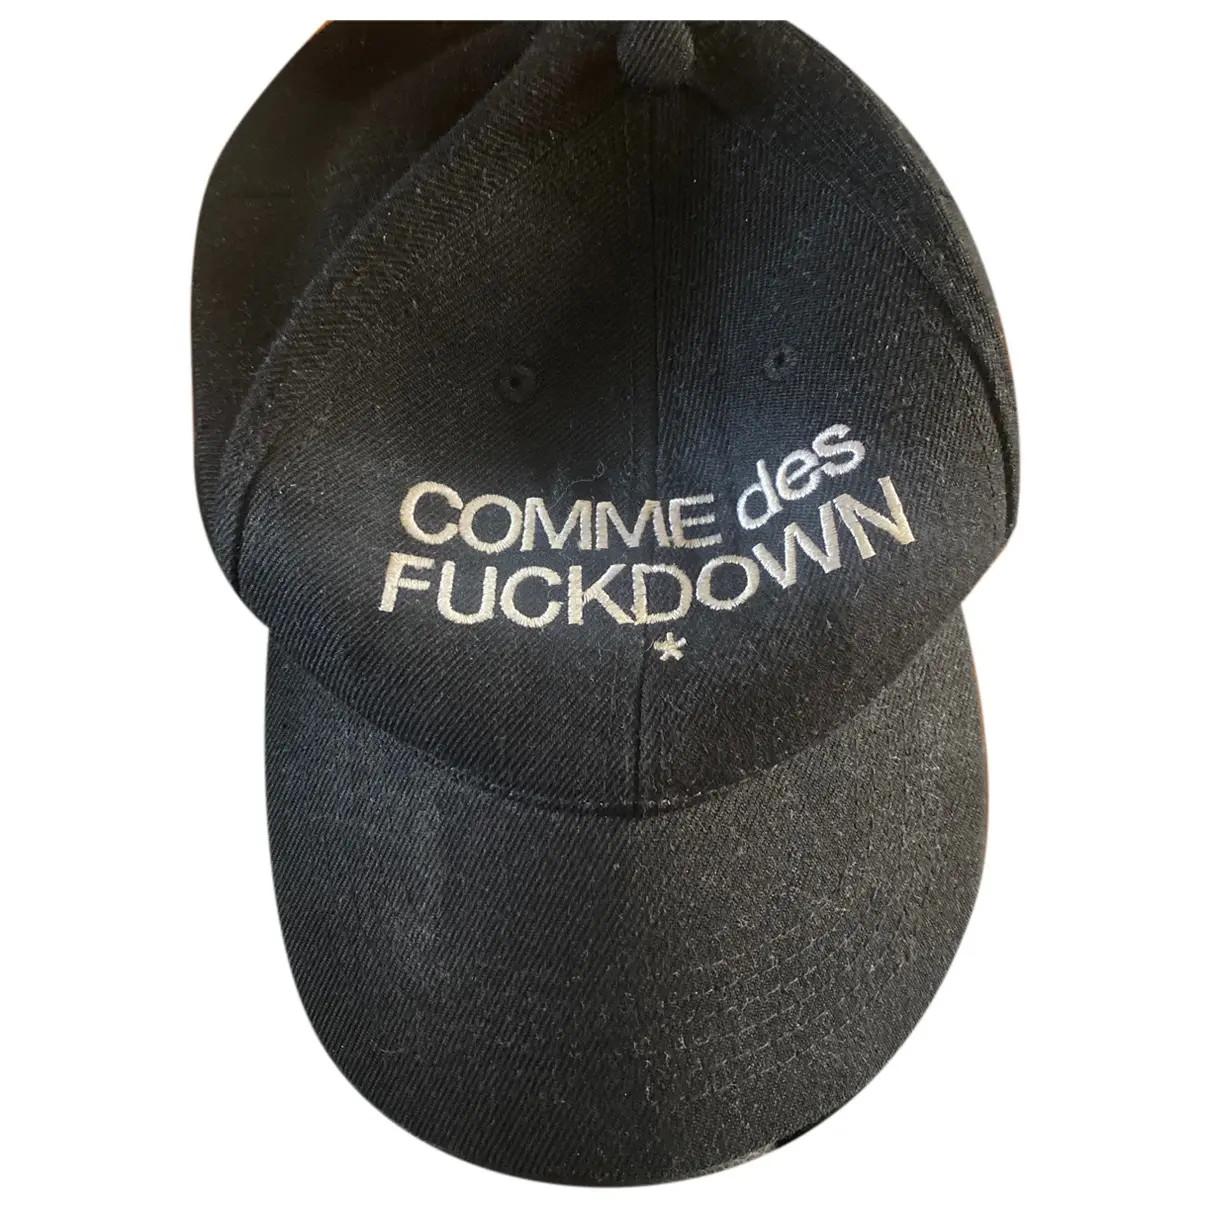 Hat Comme des fuckdown